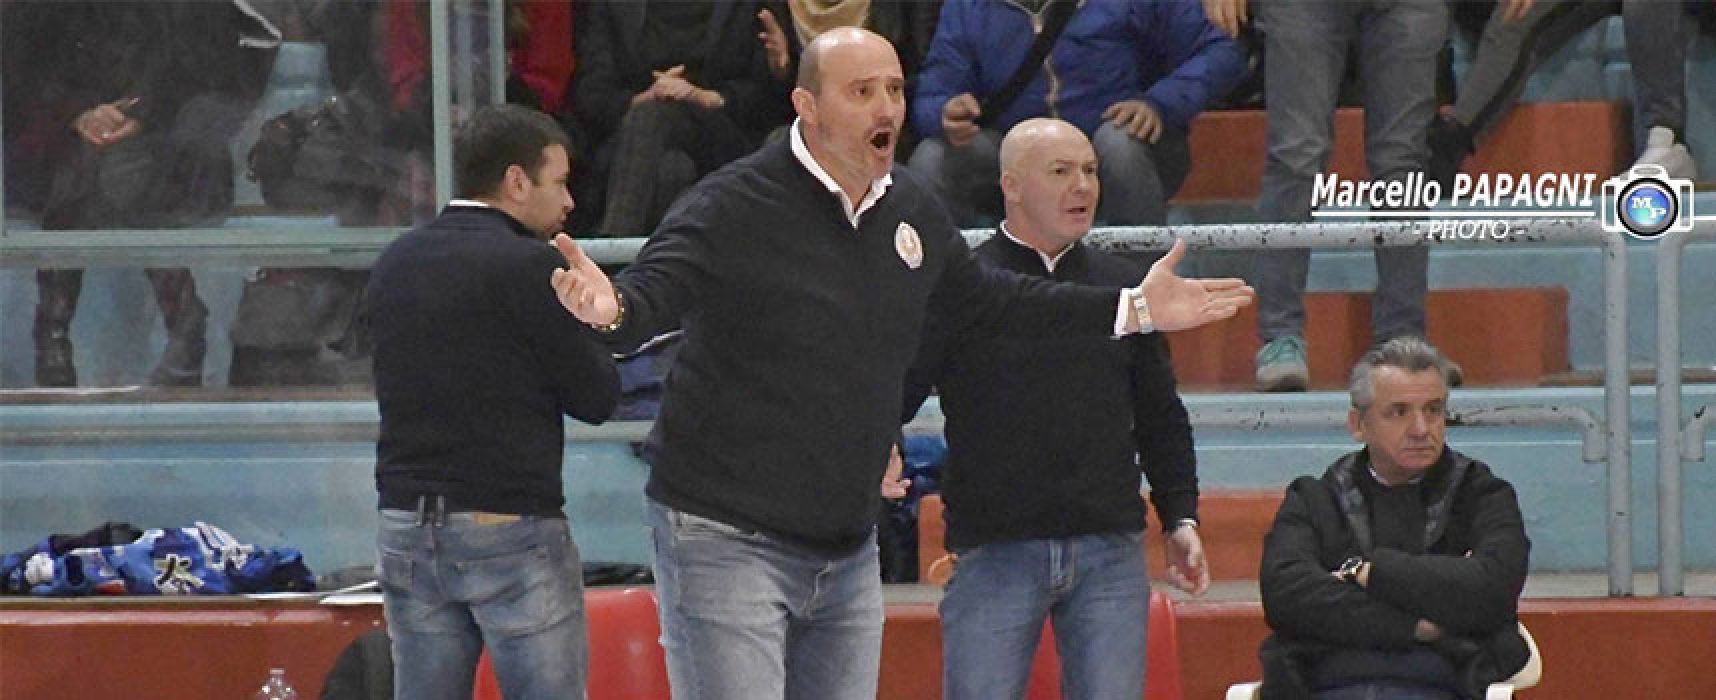 Lions basket, coach Marinelli rinnova per la prossima stagione